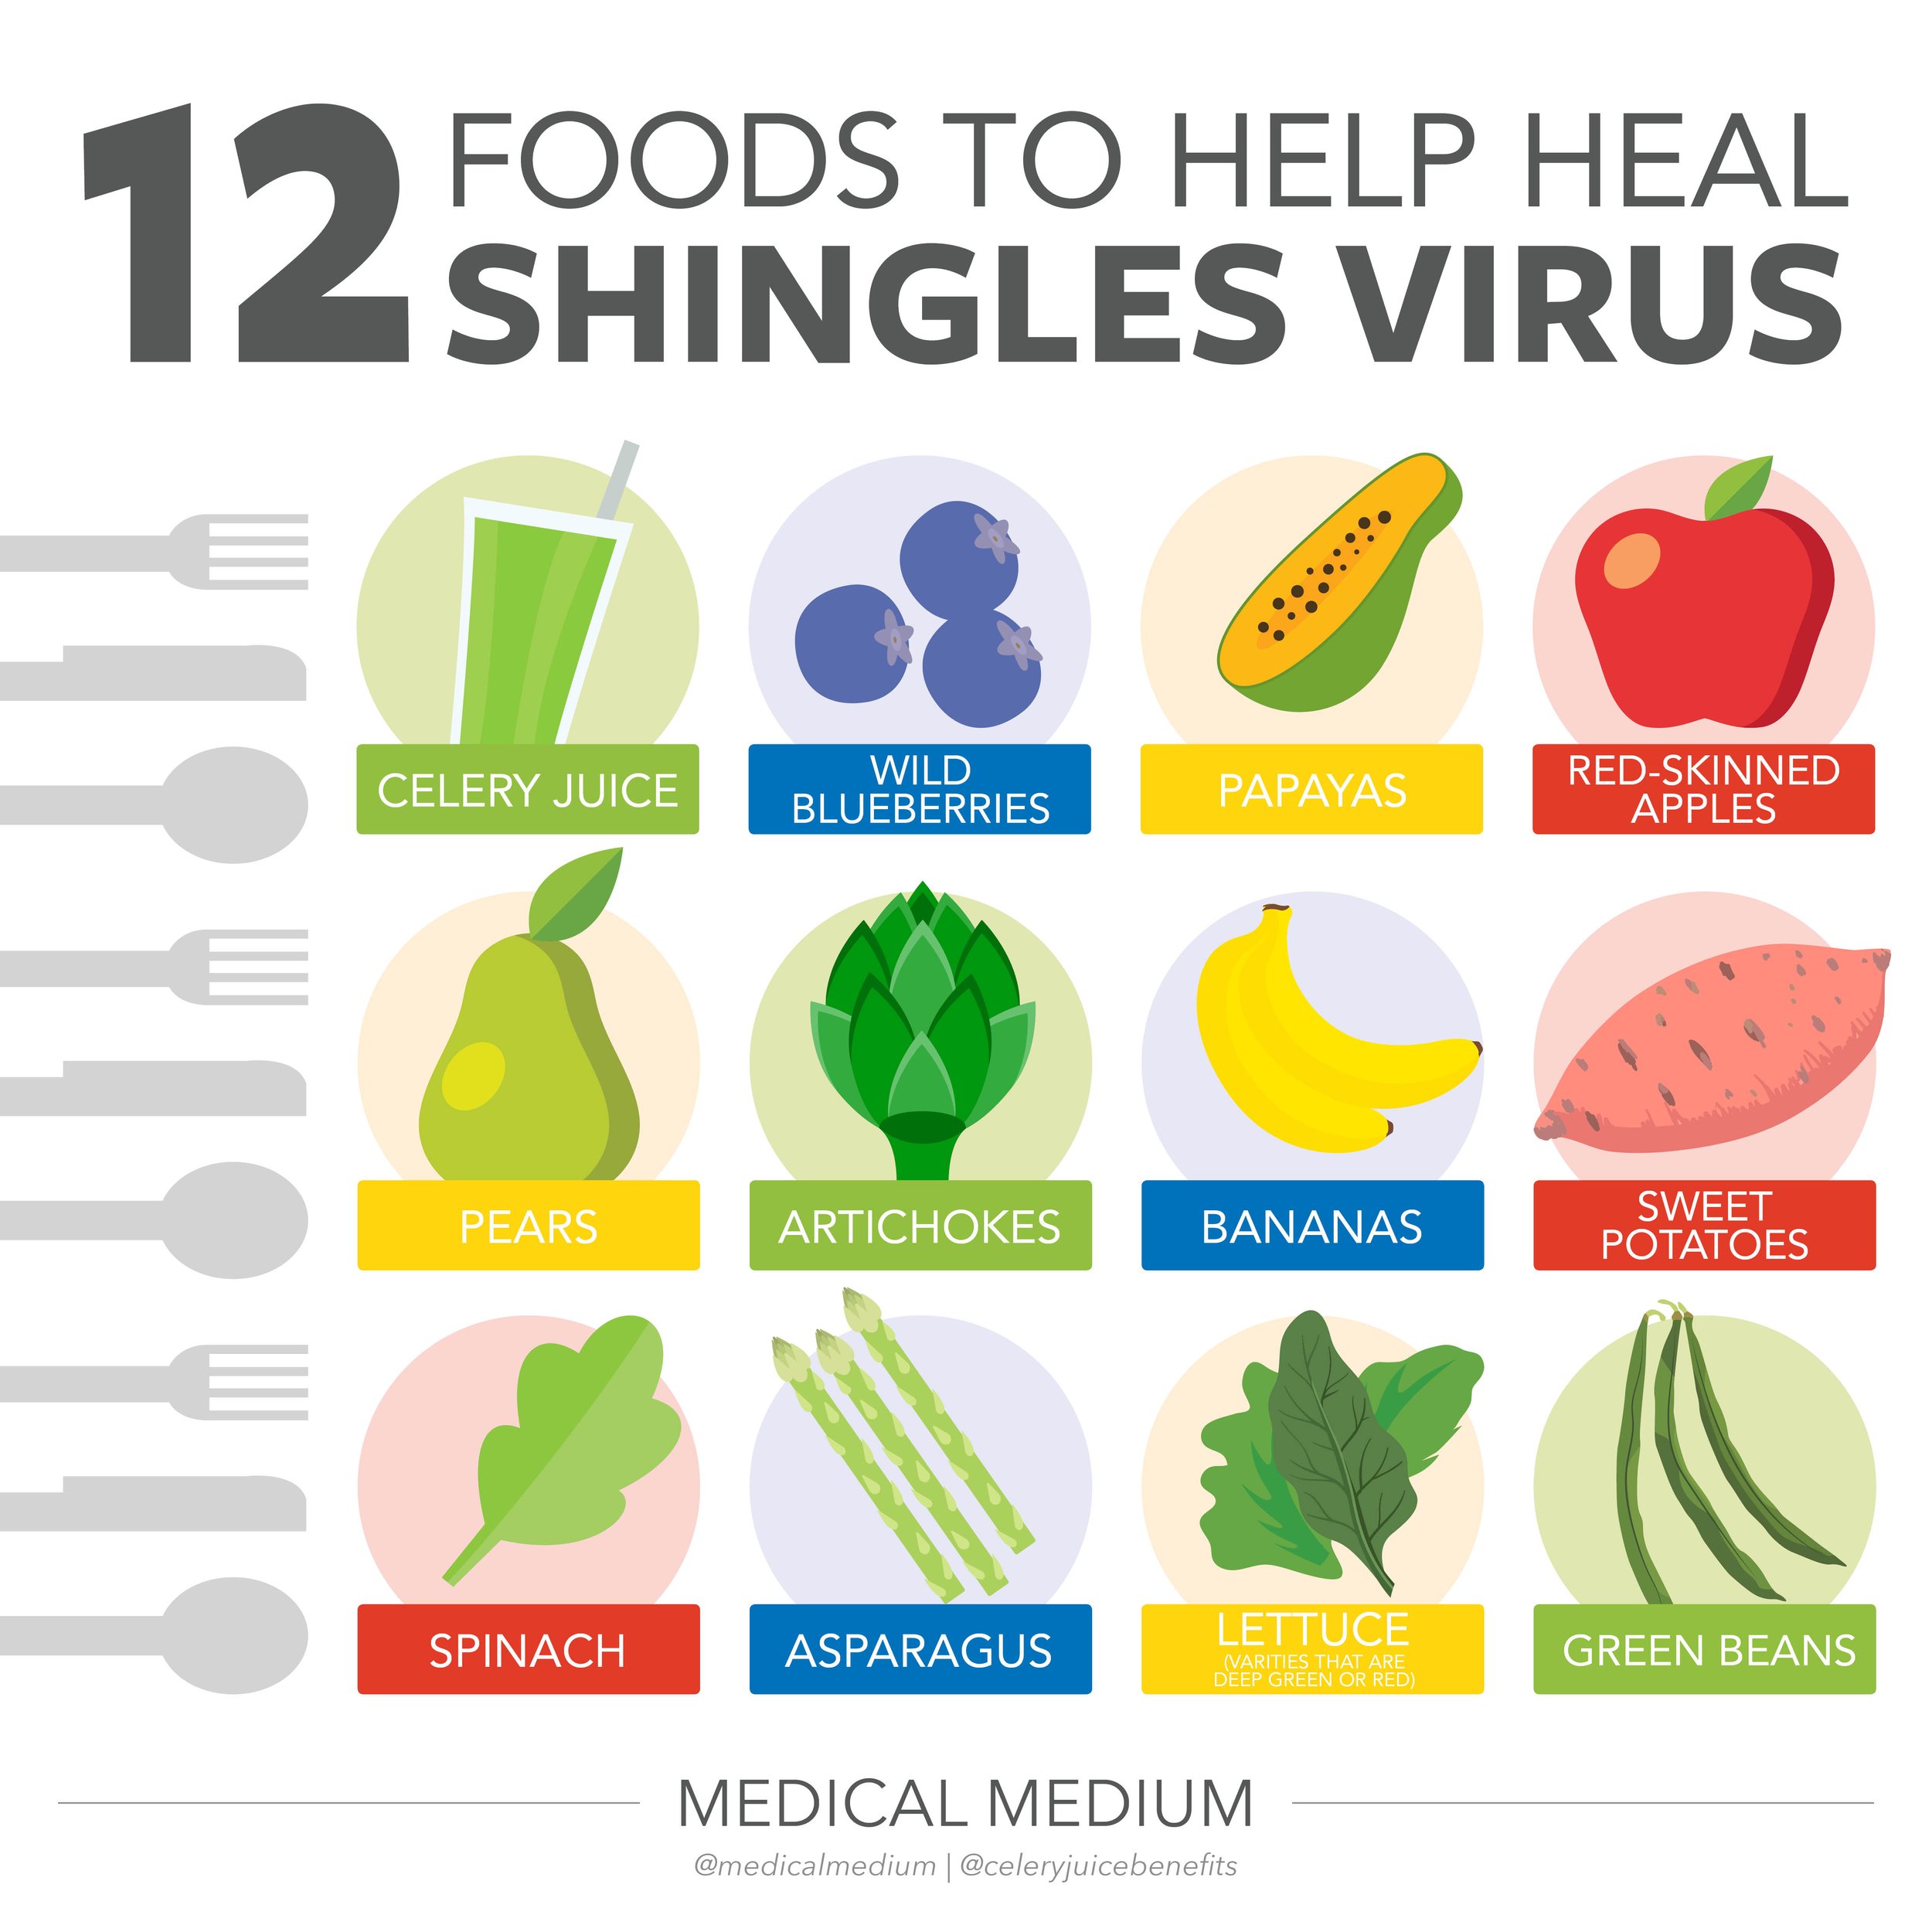 12 Foods To Help Heal Shingles Virus.jpg